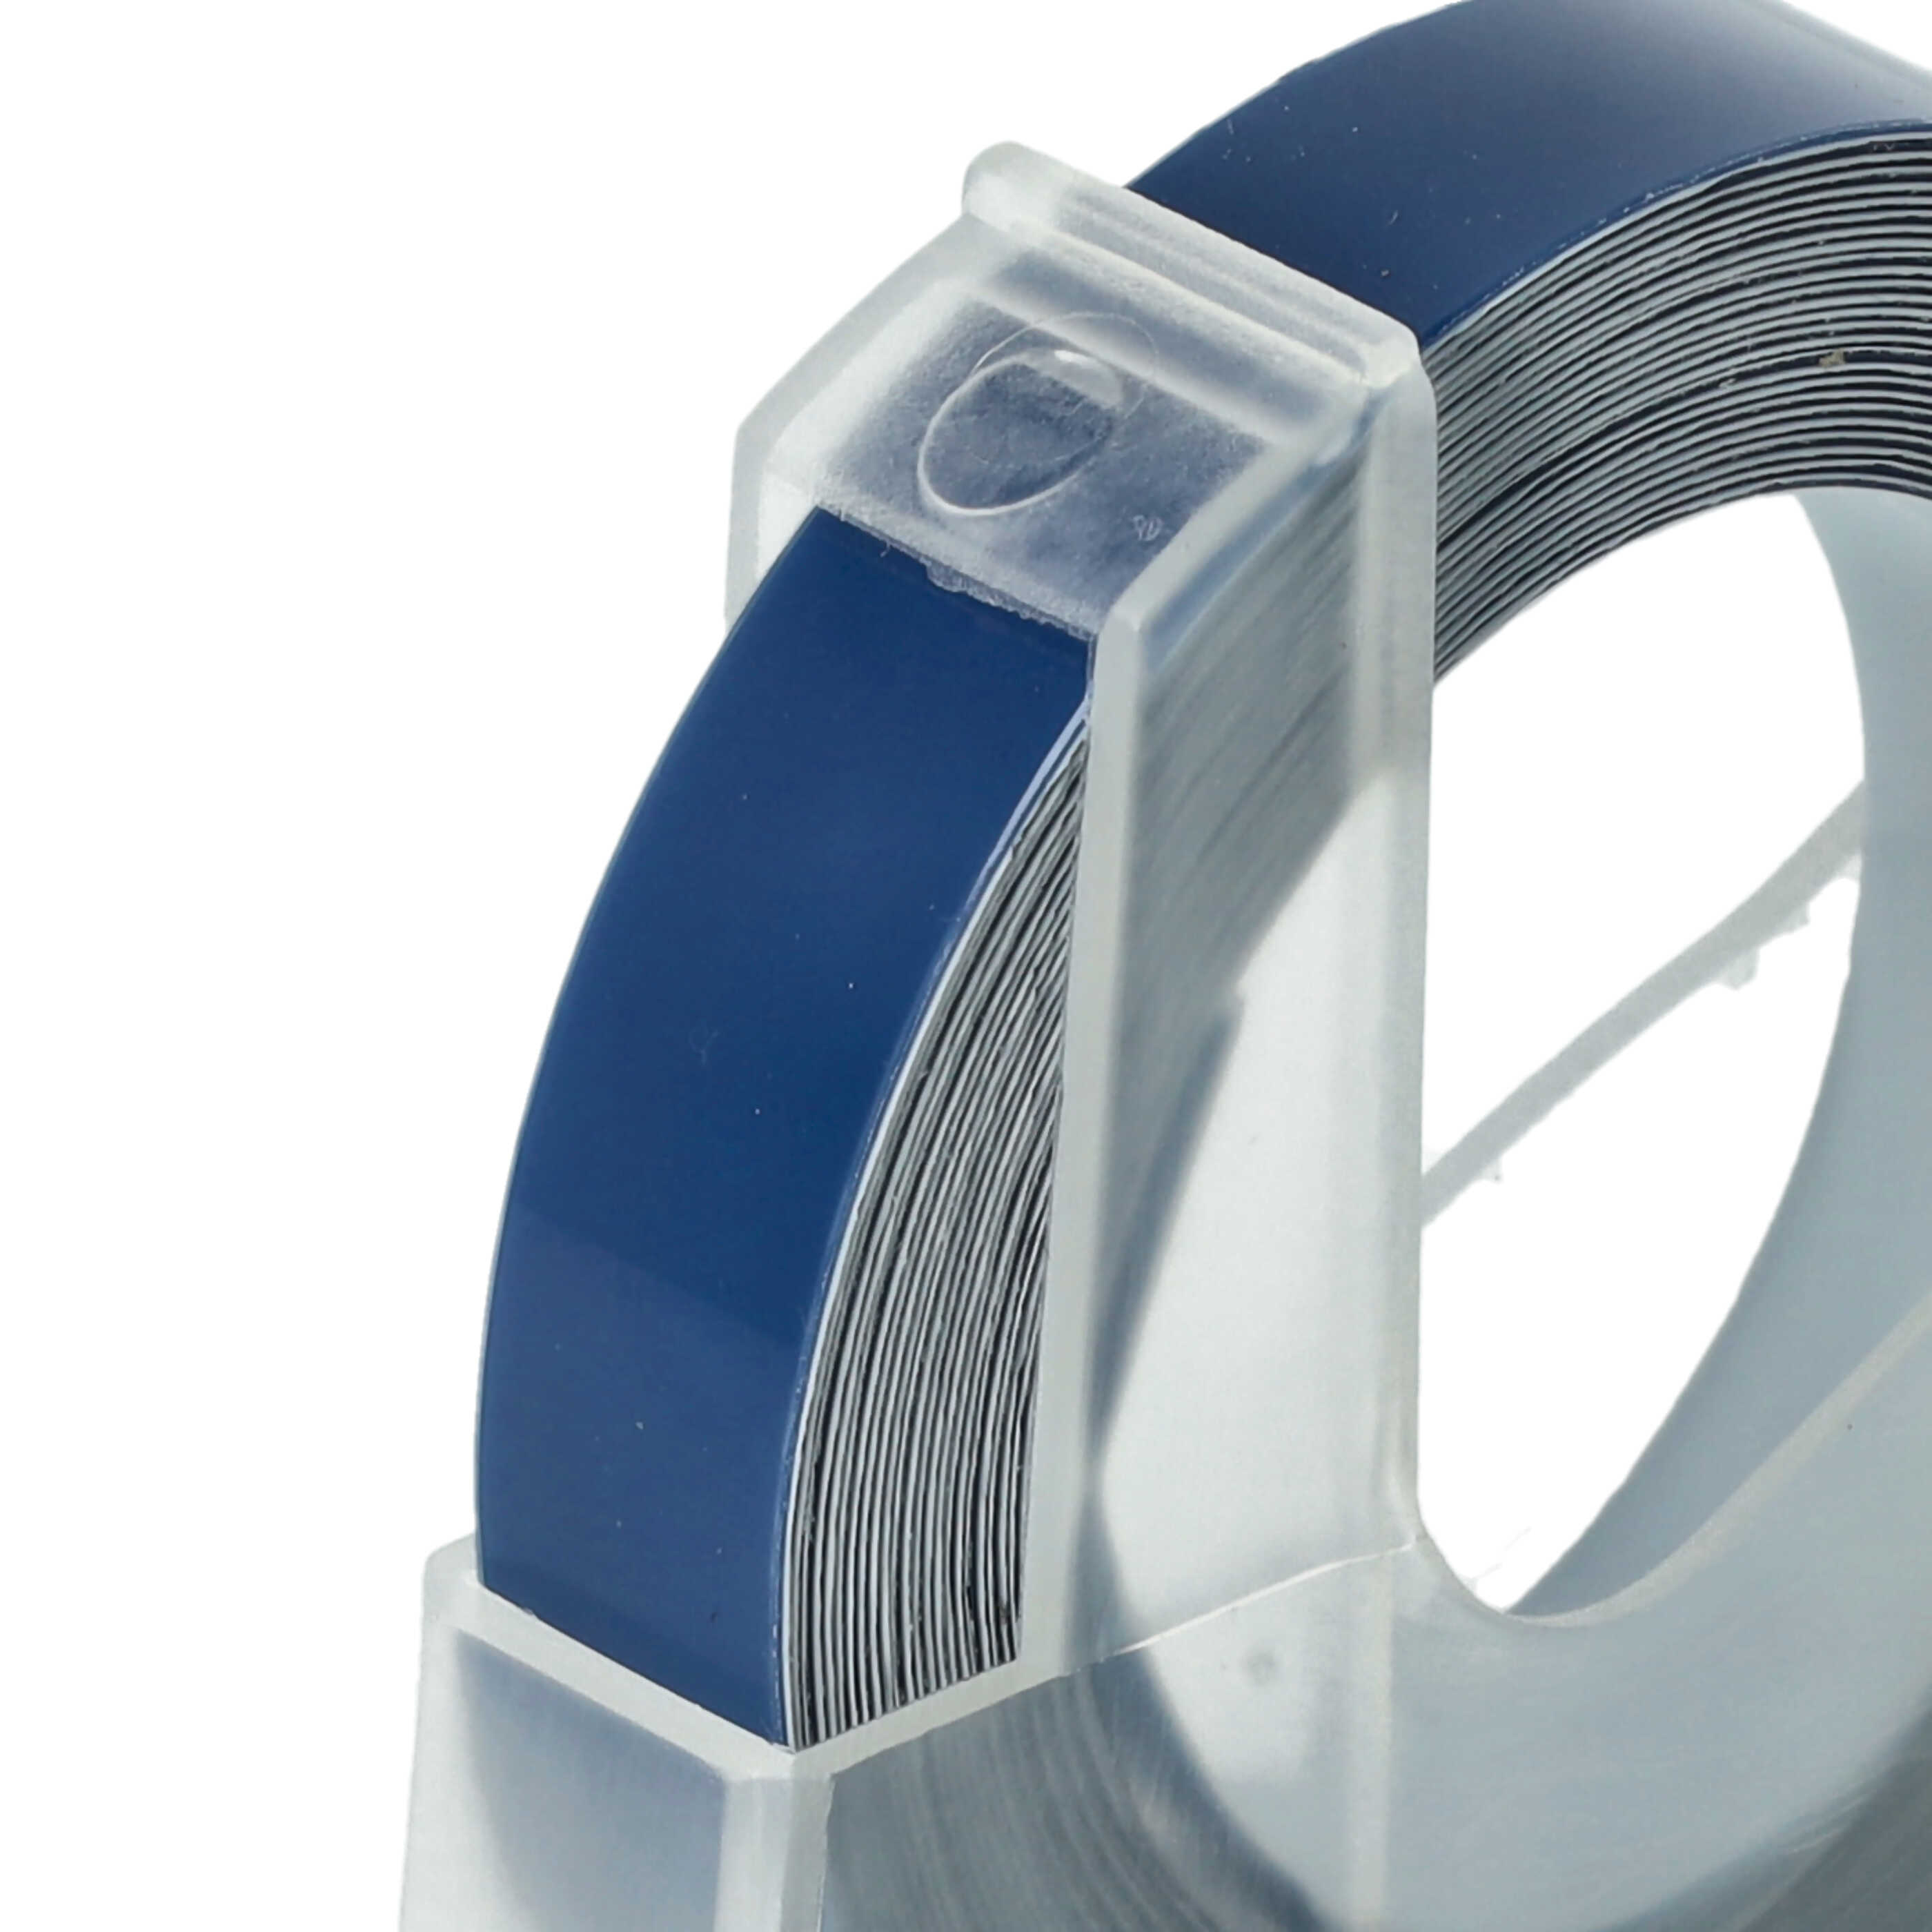 Casete cinta relieve 3D Casete cinta escritura reemplaza Dymo 520106, S0898140 Blanco su Azul